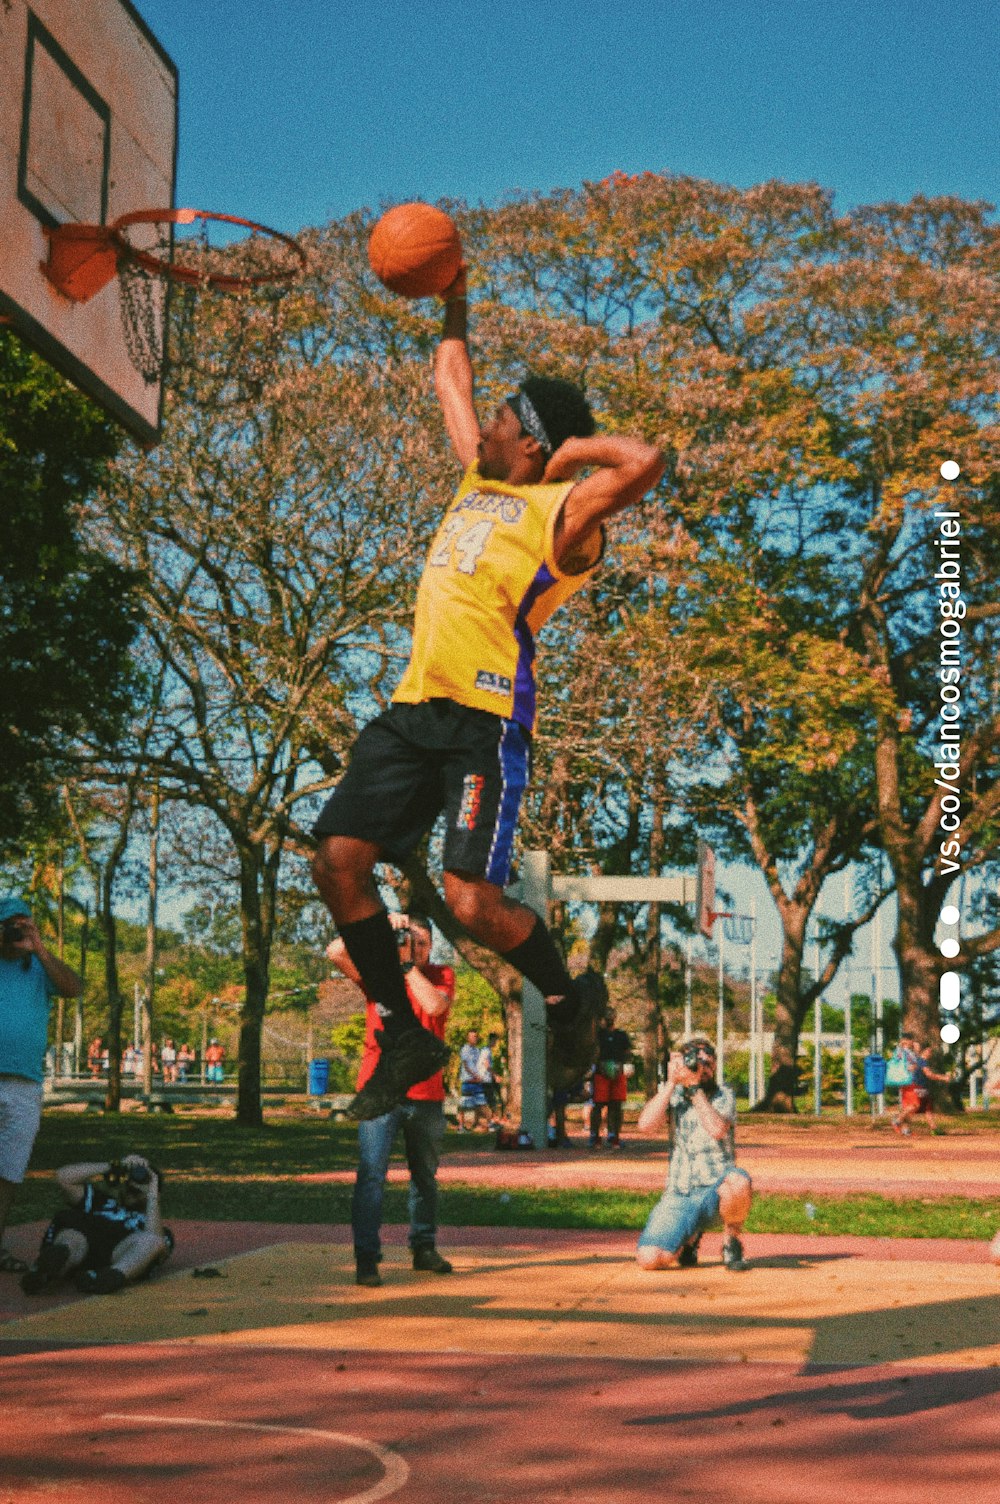 Un homme sautant en l’air pour dunker un ballon de basket